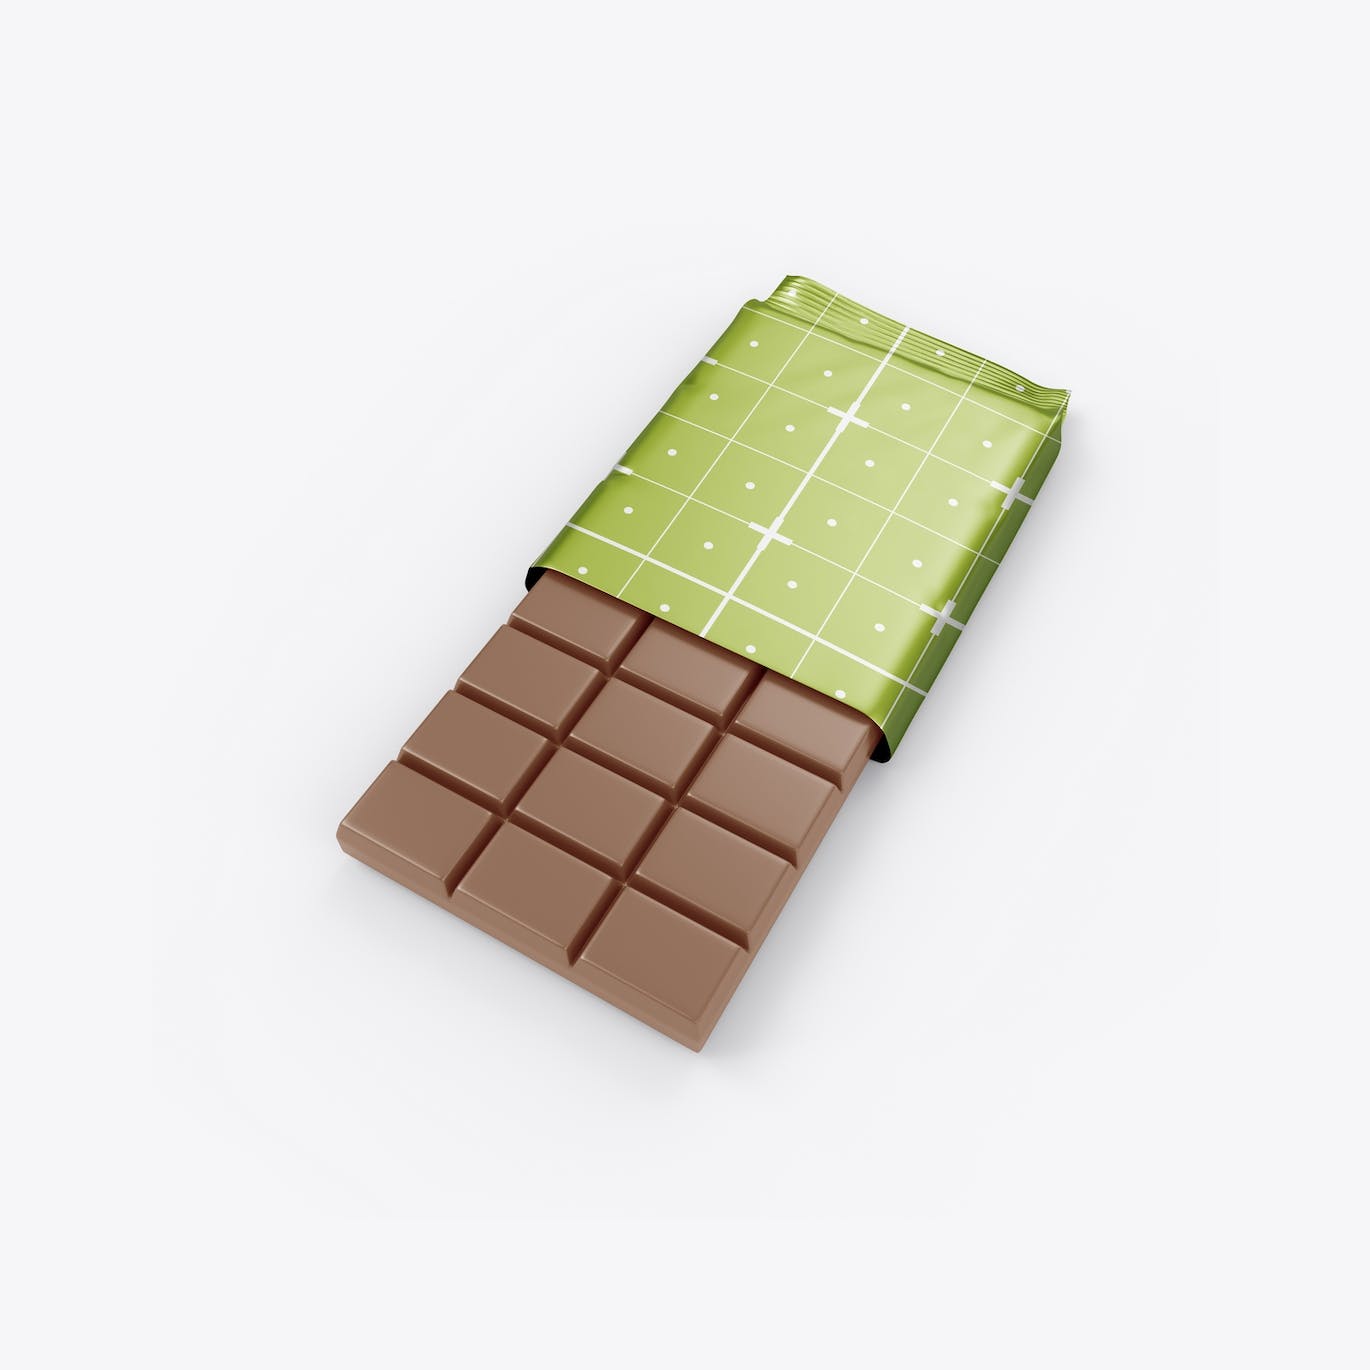 光亮的巧克力棒设计包装样机图 Set Glossy Chocolate Bar Mockup 样机素材 第5张